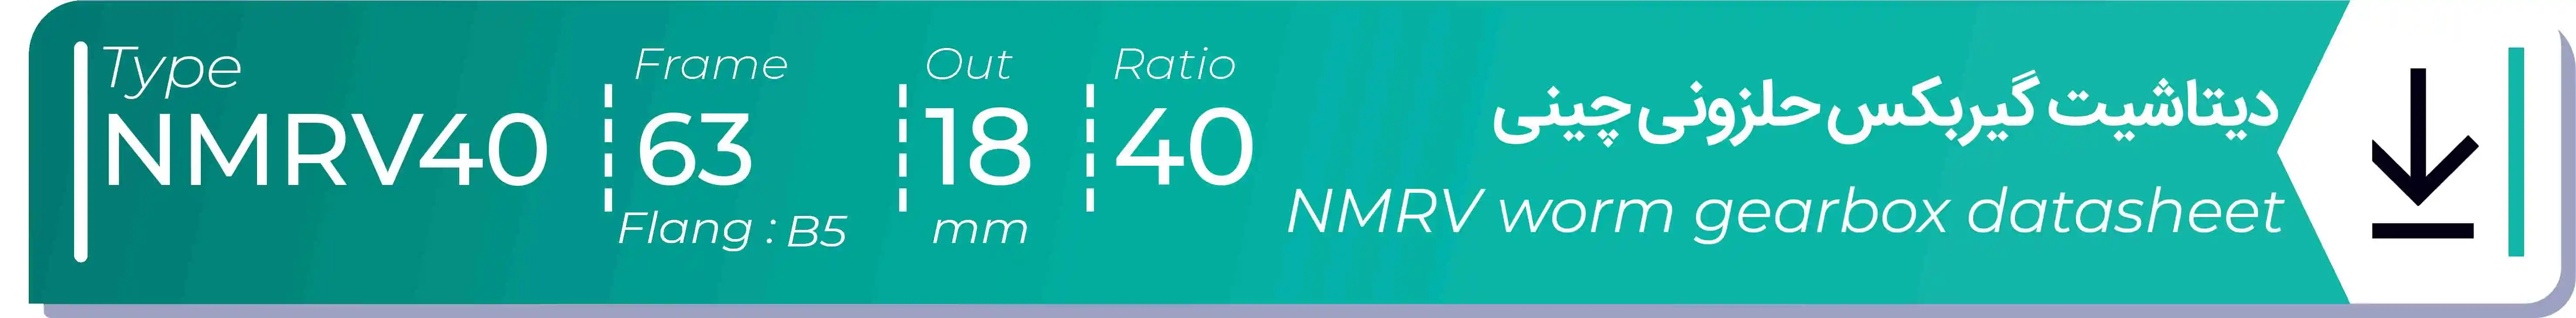  دیتاشیت و مشخصات فنی گیربکس حلزونی چینی   NMRV40  -  با خروجی 18- میلی متر و نسبت40 و فریم 63